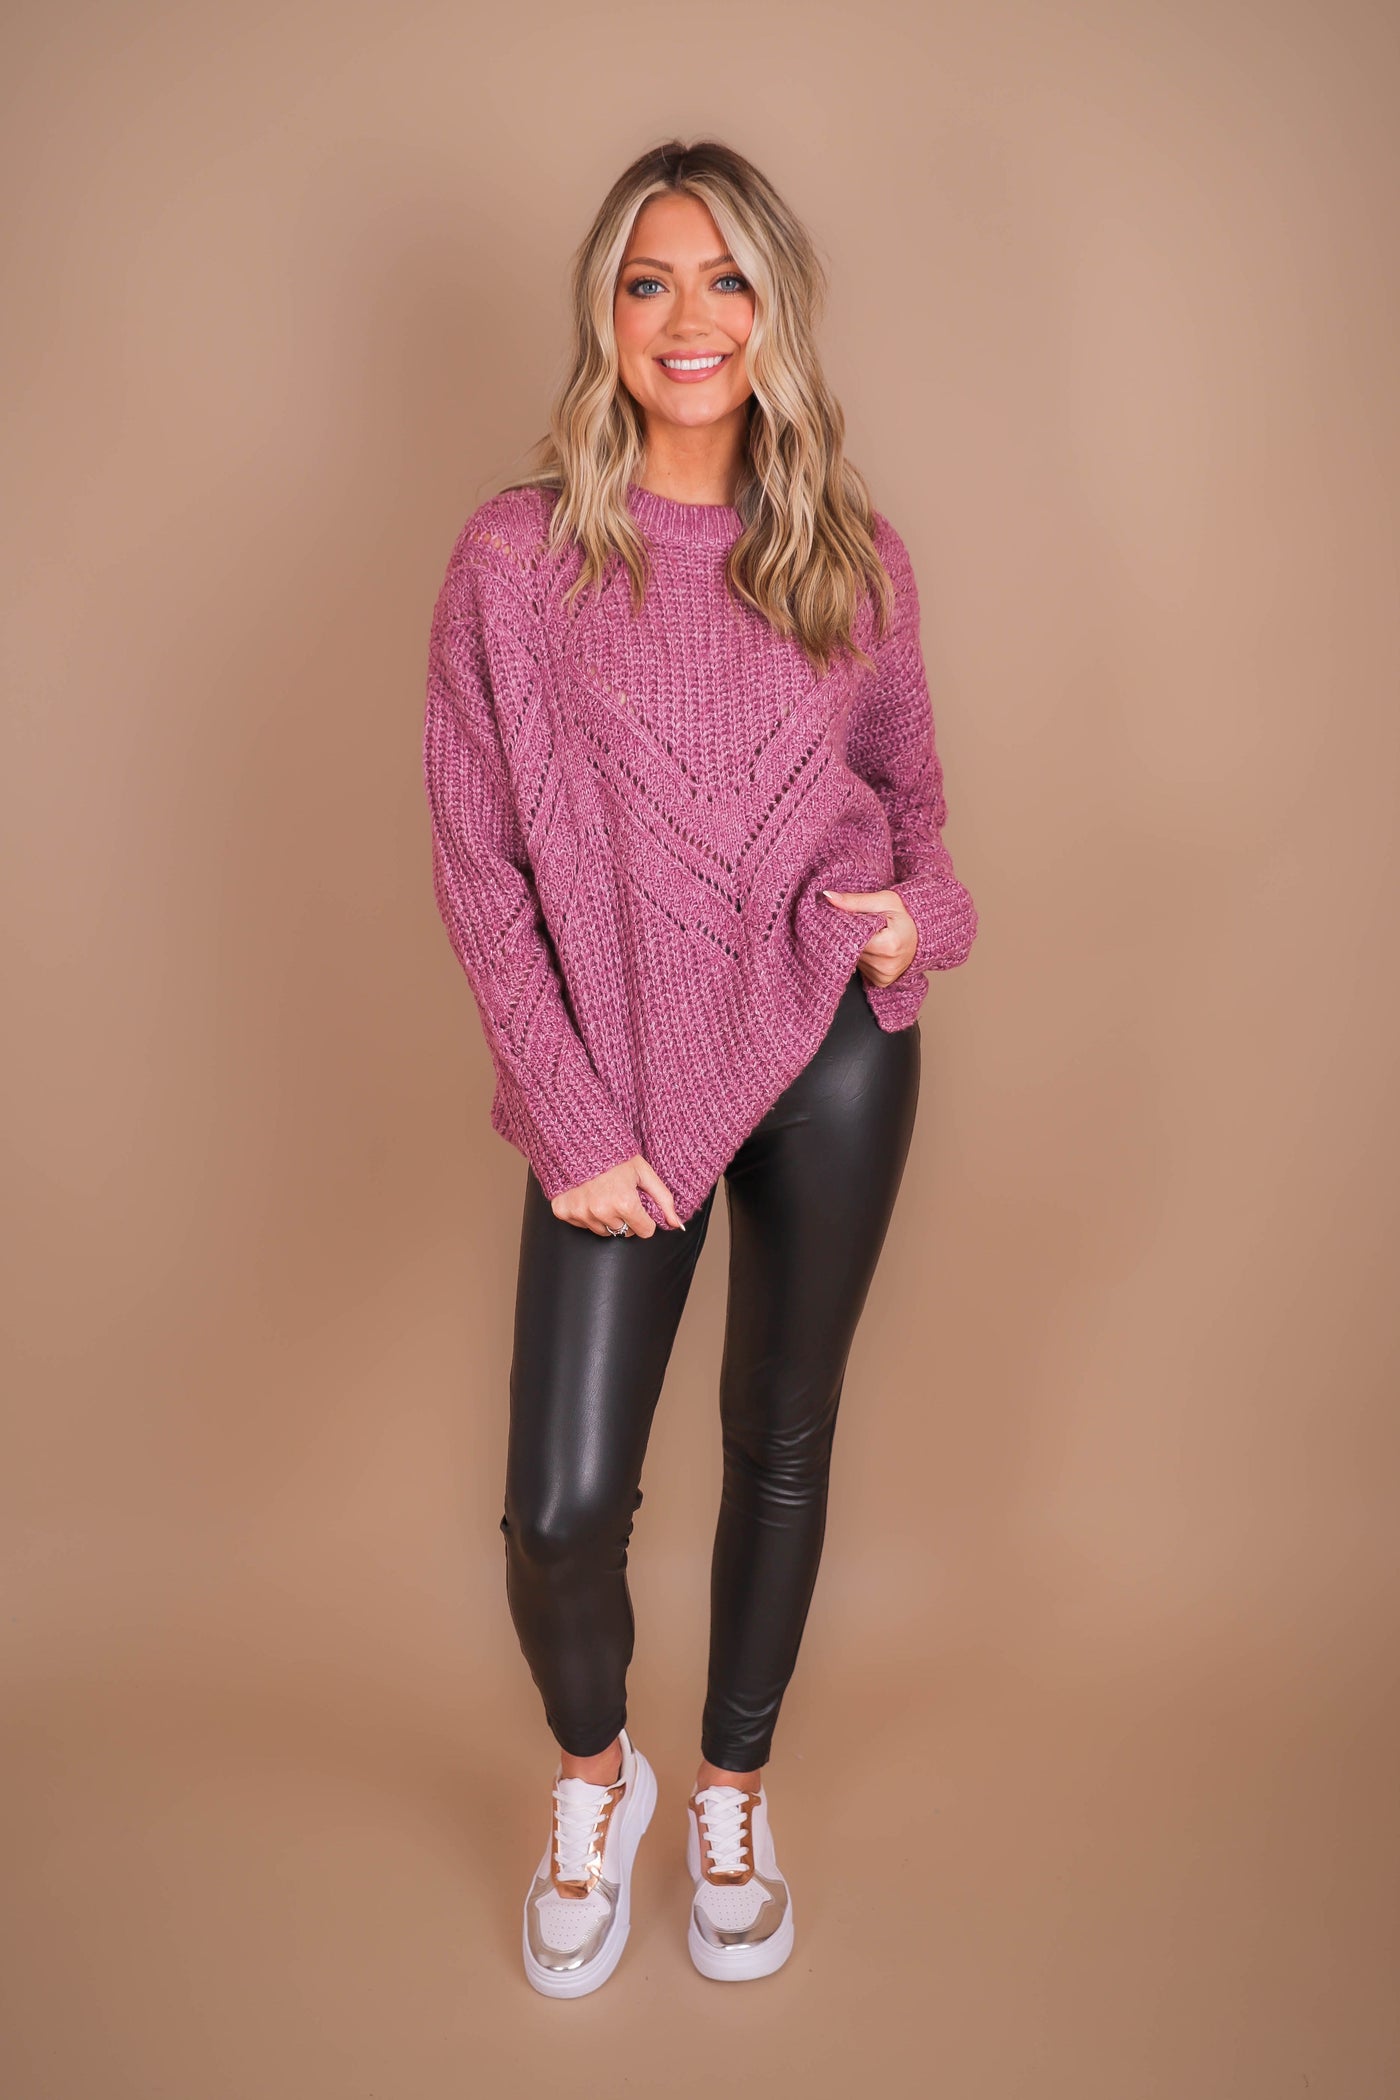 Women's Oversized Knit Sweater- Women's Soft Purple Sweater- Be Cool Sweaters